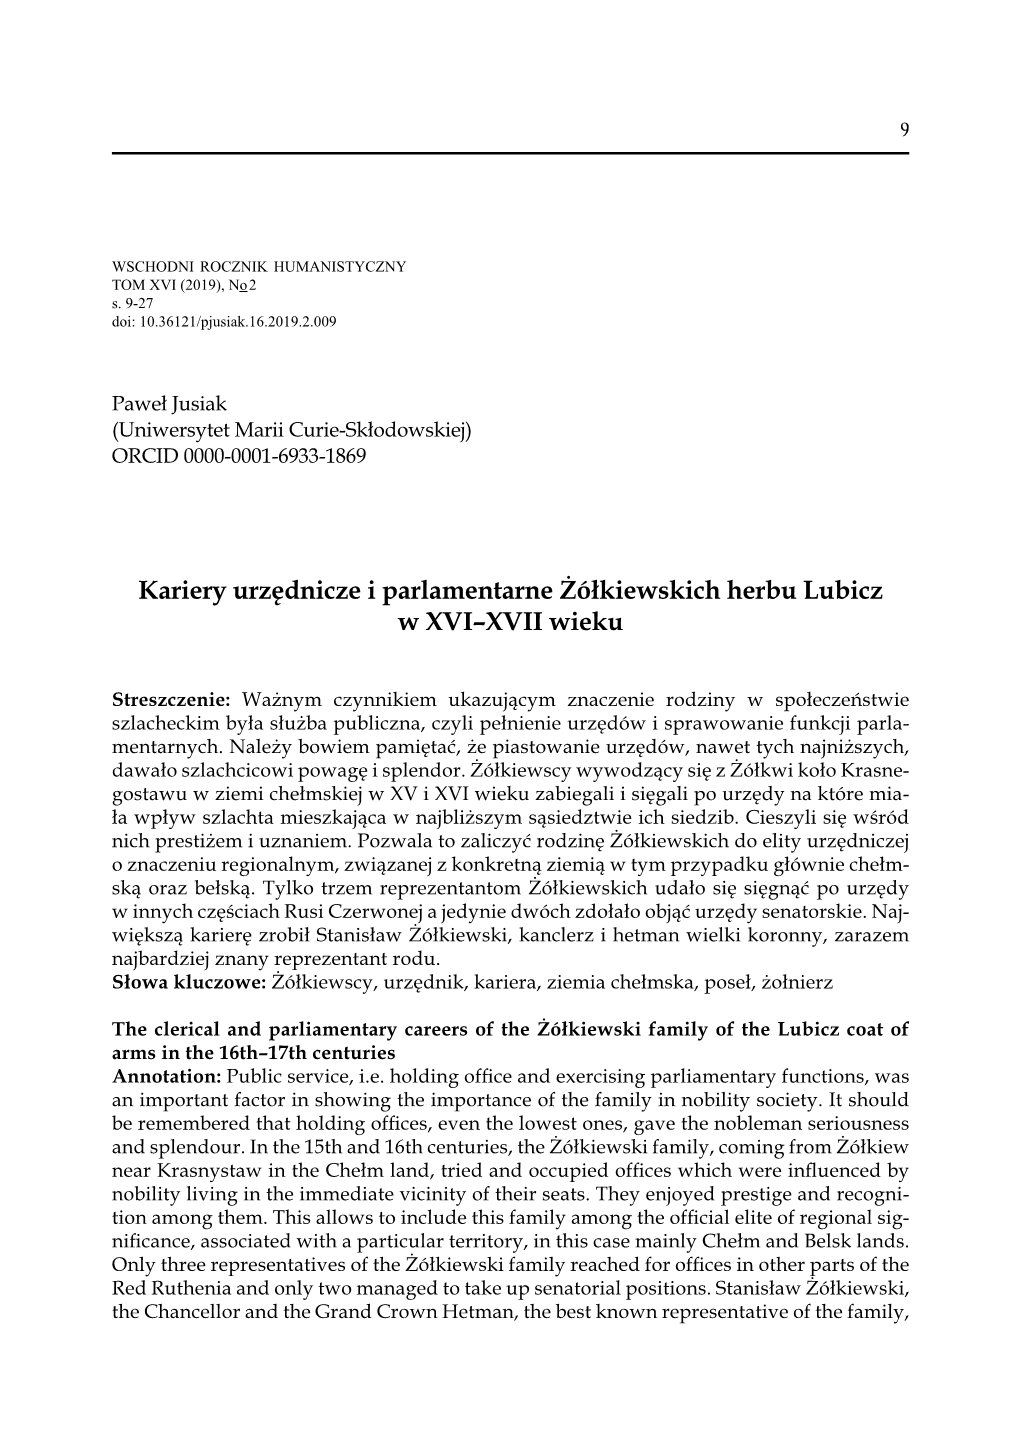 Kariery Urzędnicze I Parlamentarne Żółkiewskich Herbu Lubicz W XVI–XVII Wieku